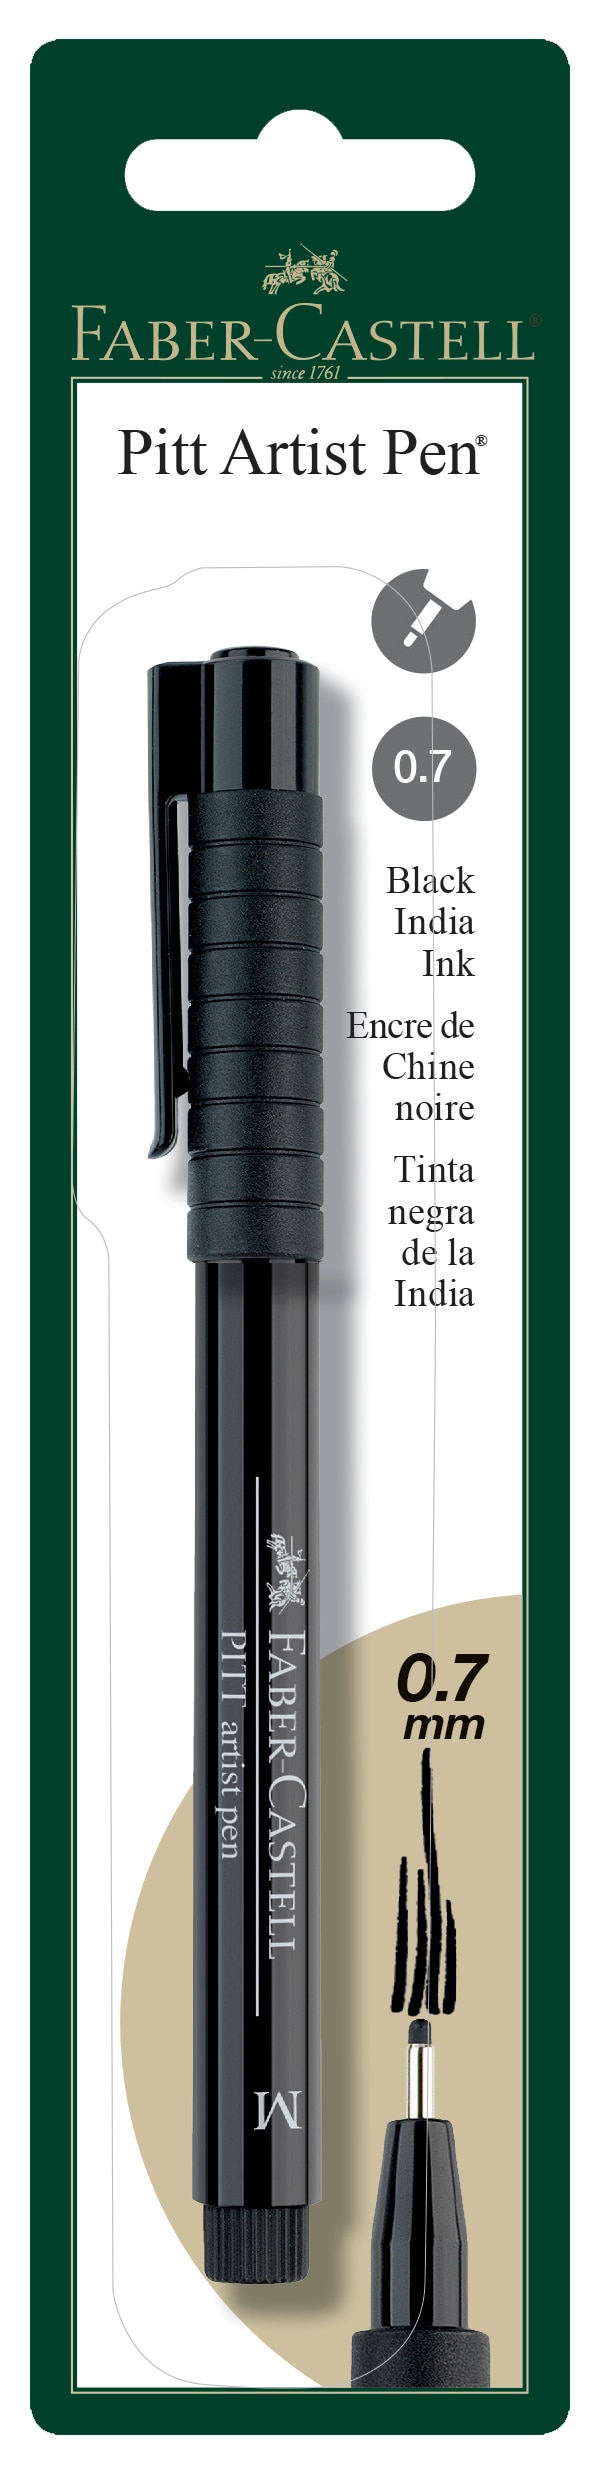 Faber-Castell PITT Artist Pen, Medium, Black